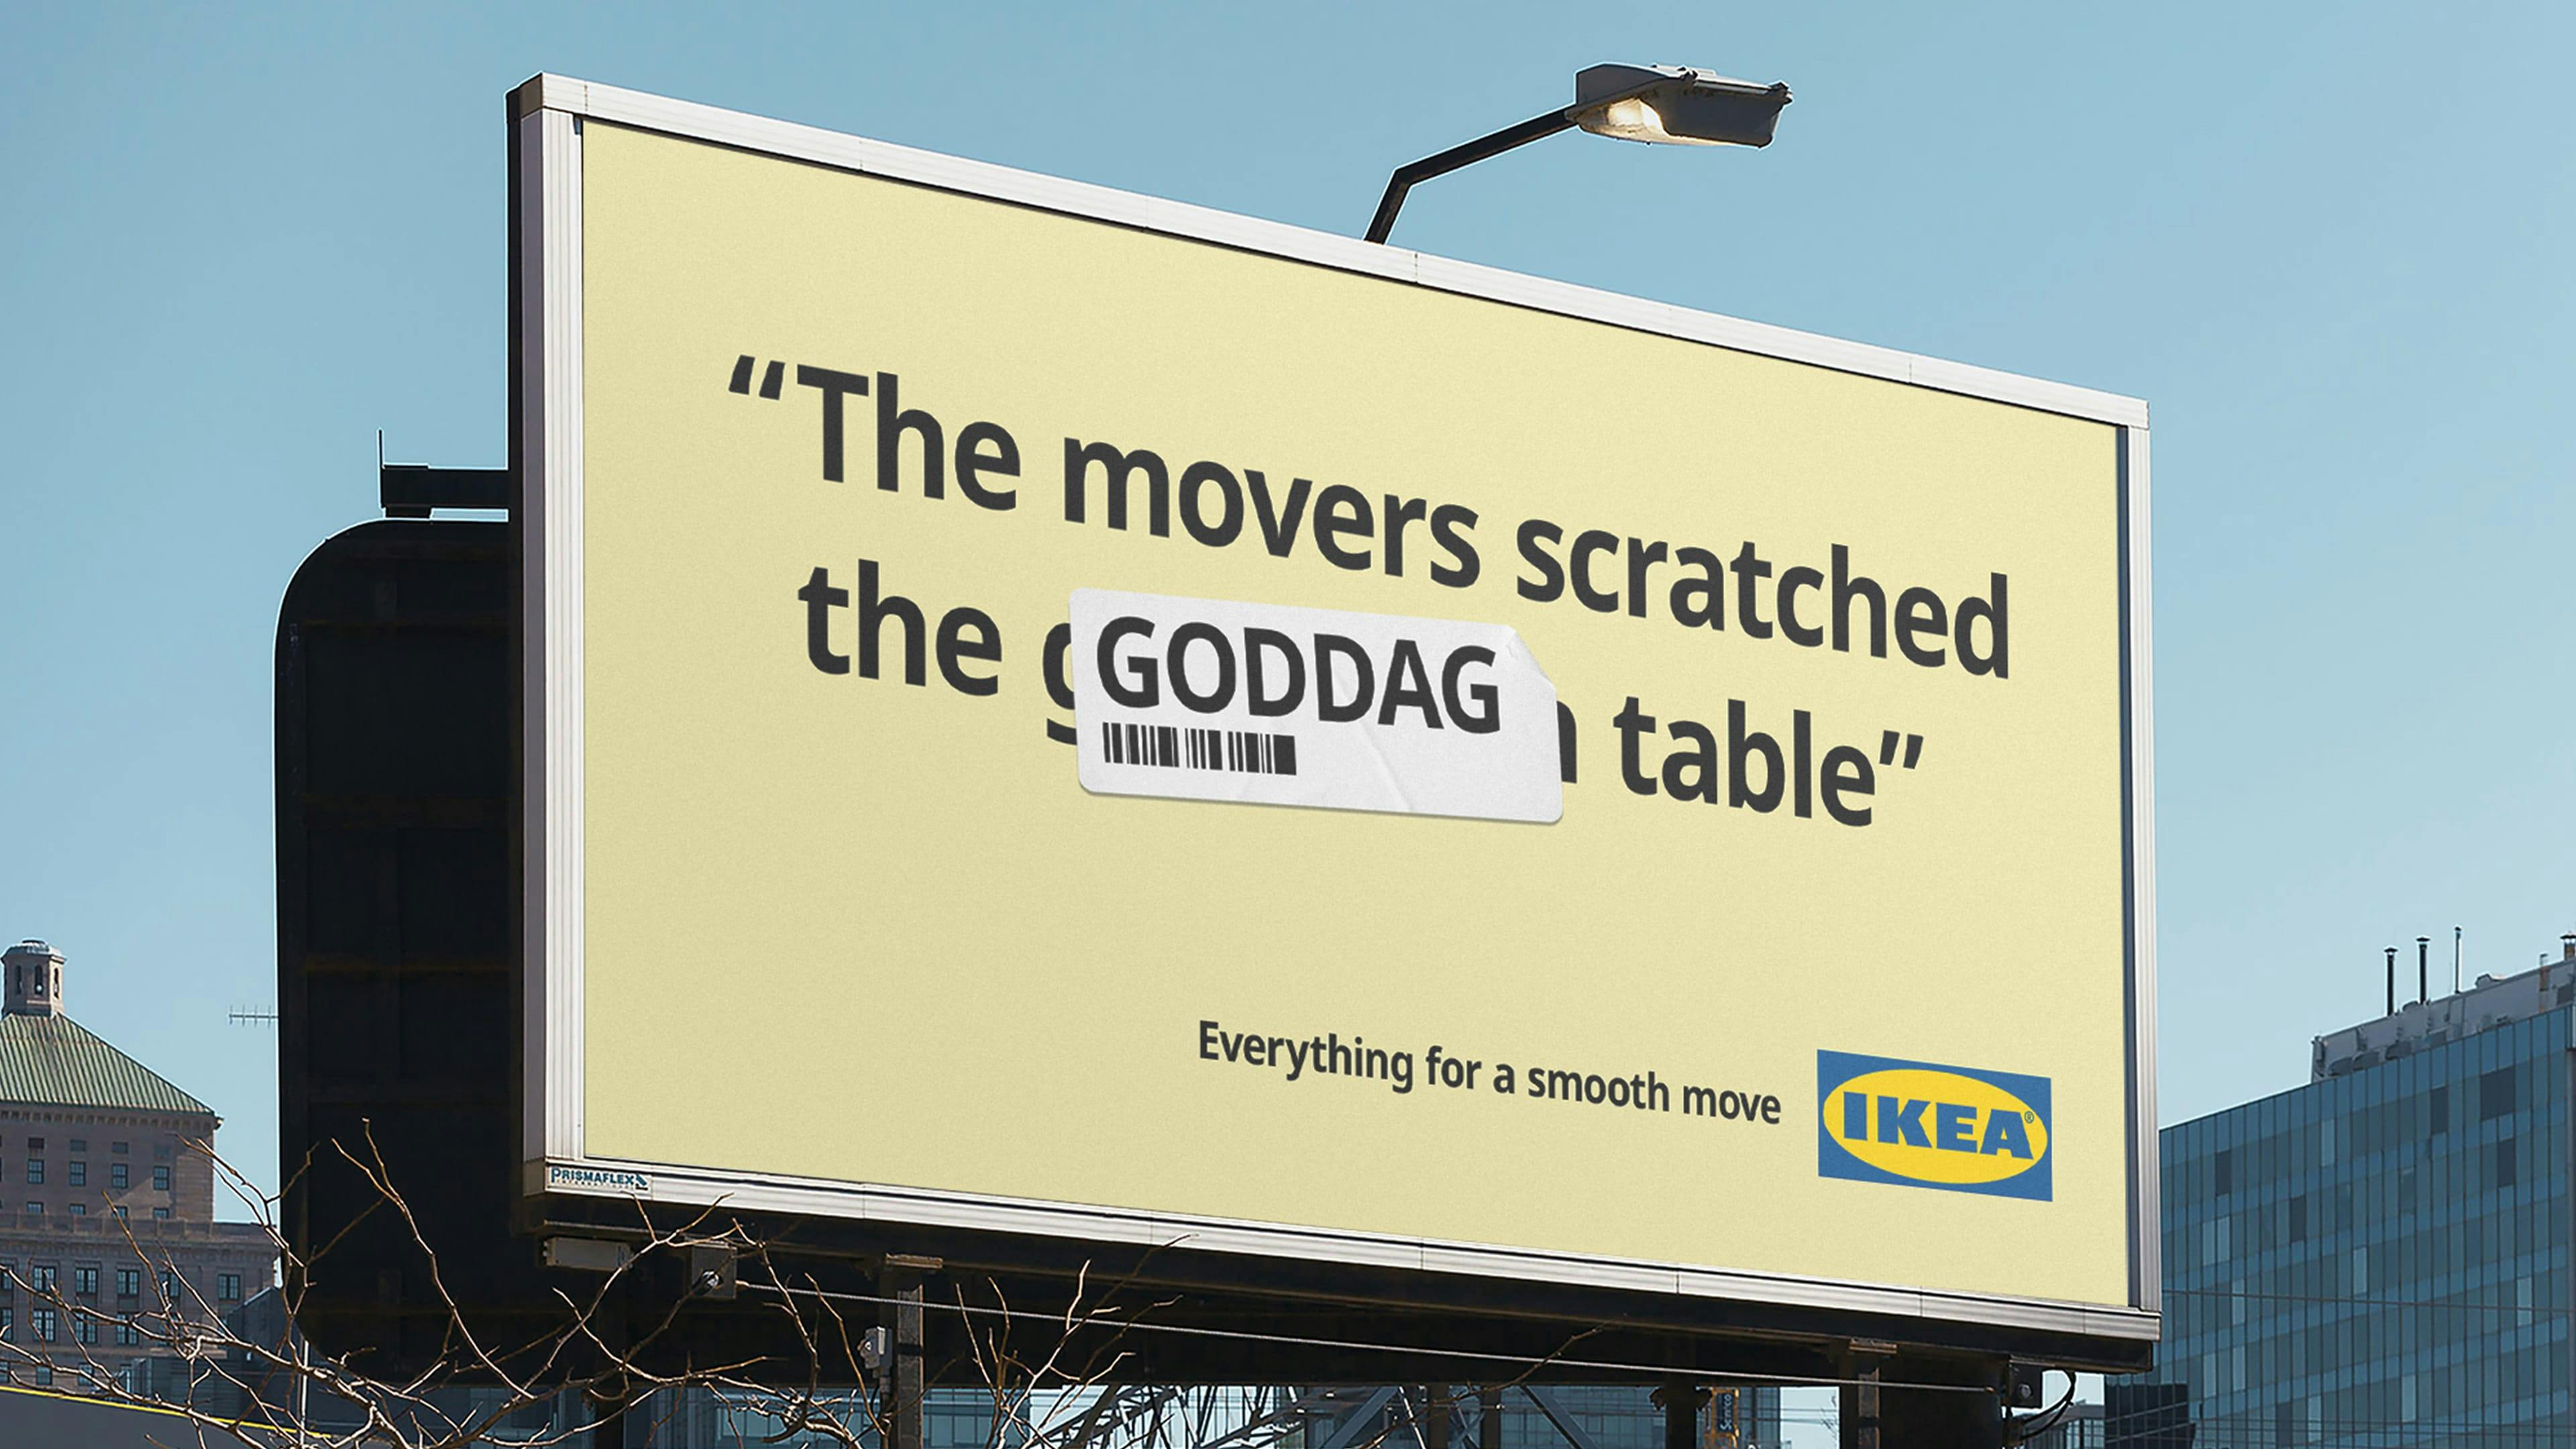 IKEA billboard "Goddag table" 